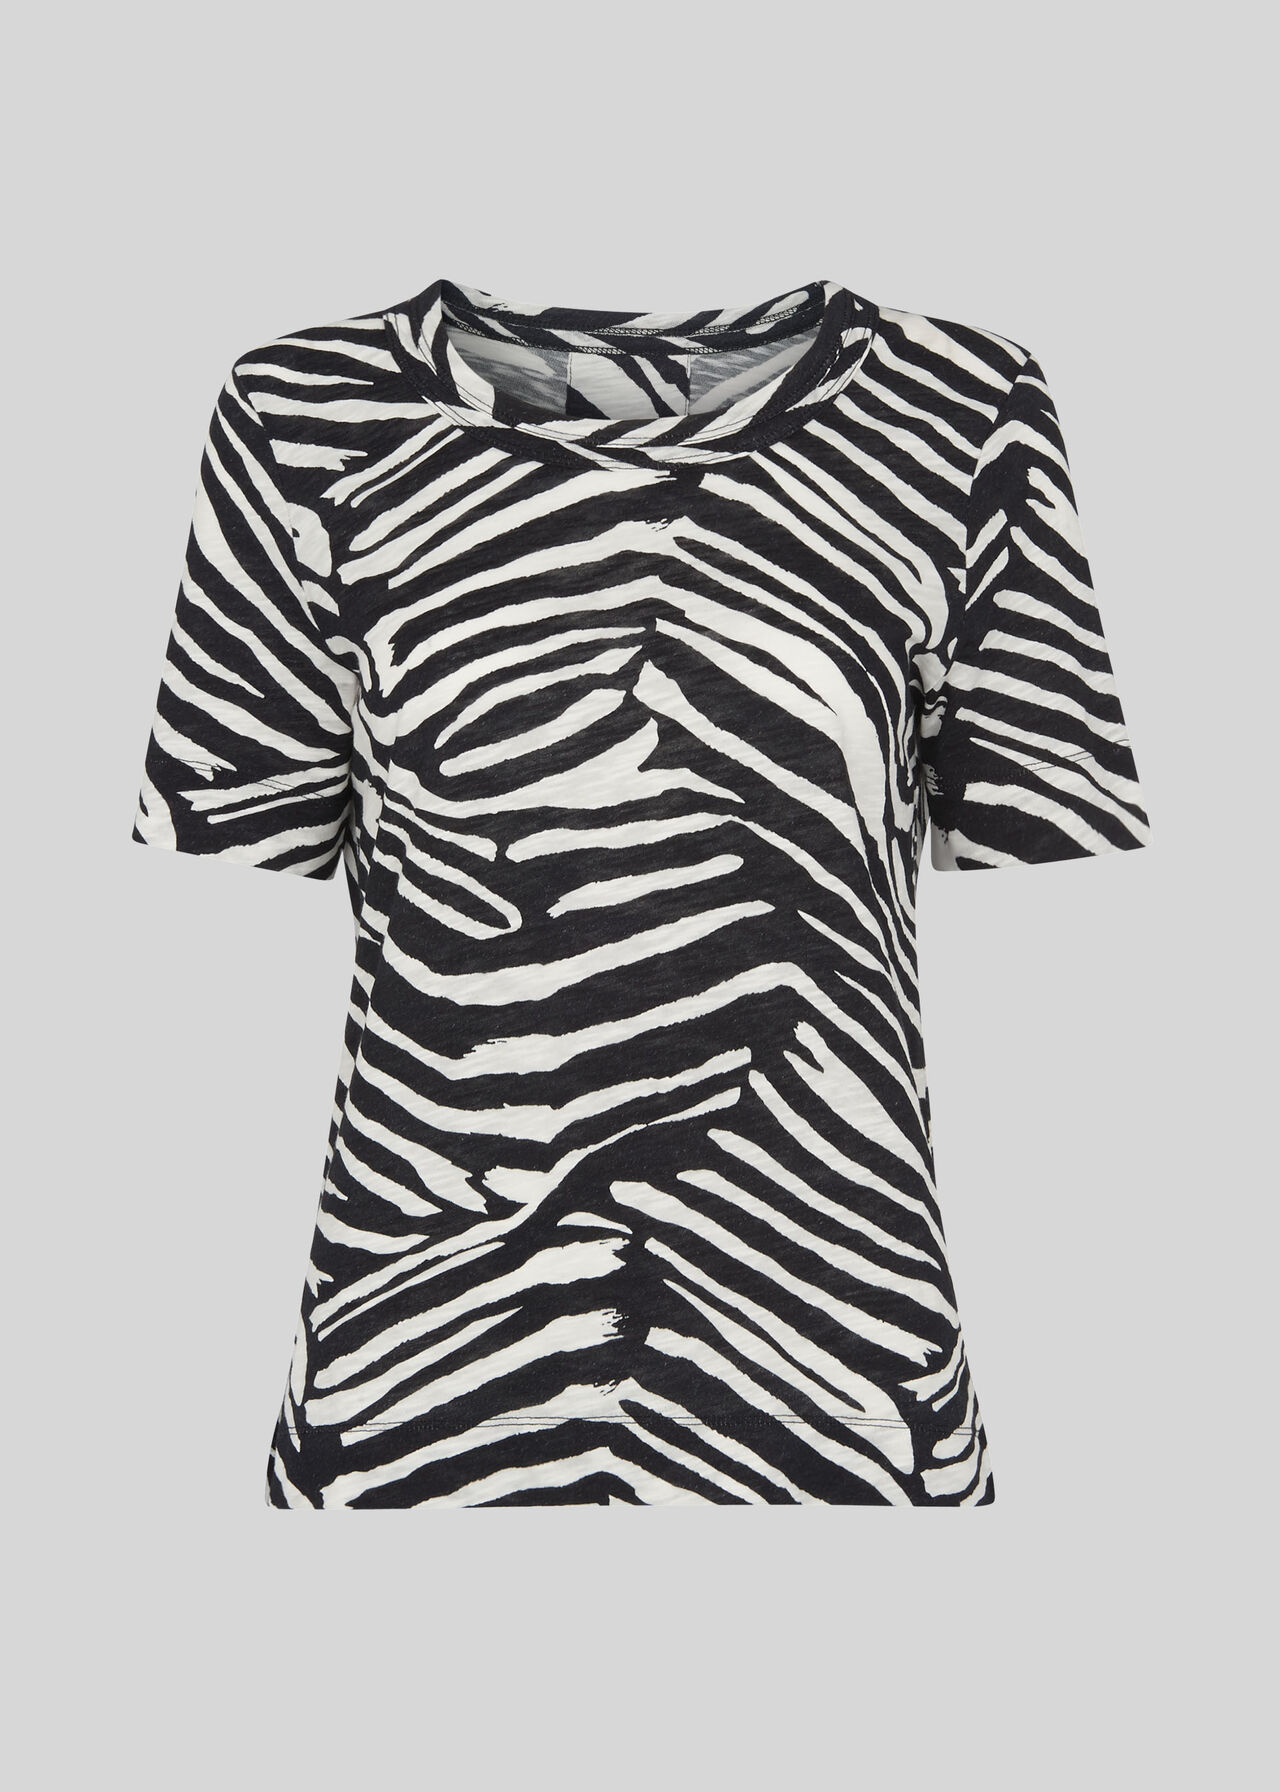 Zebra Print Rosa T-shirt Black/White